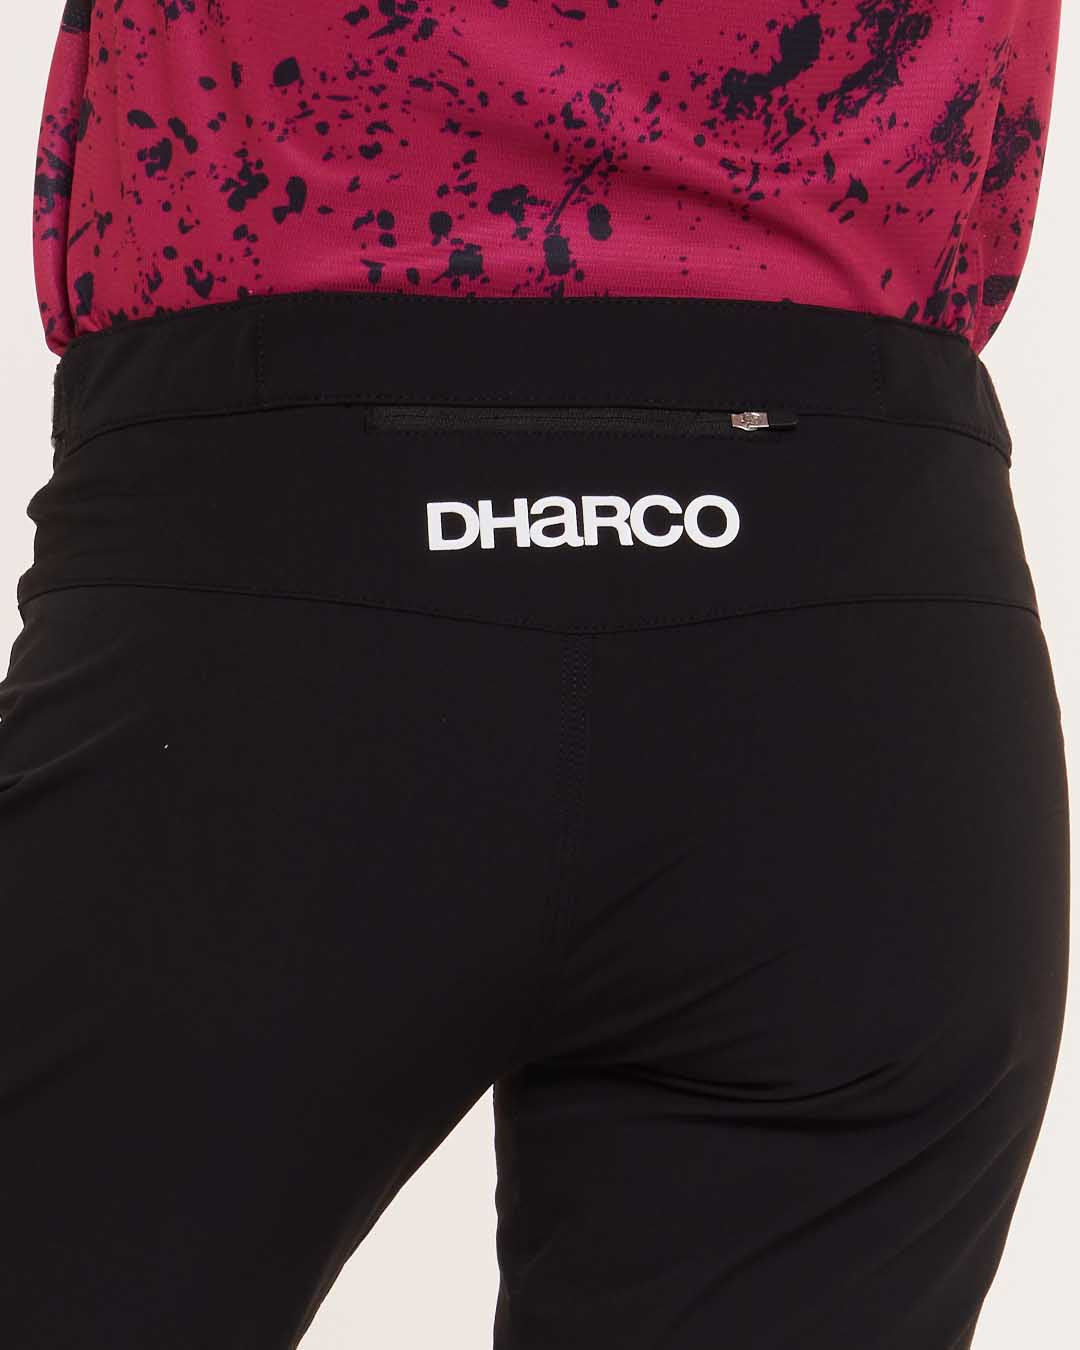 https://dharco.com/cdn/shop/files/DHaRCO-MTB-Clothing-Womens-Bottoms-Pants-Gravity-Black-1080x1350px-website-06_1200x.jpg?v=1701759386